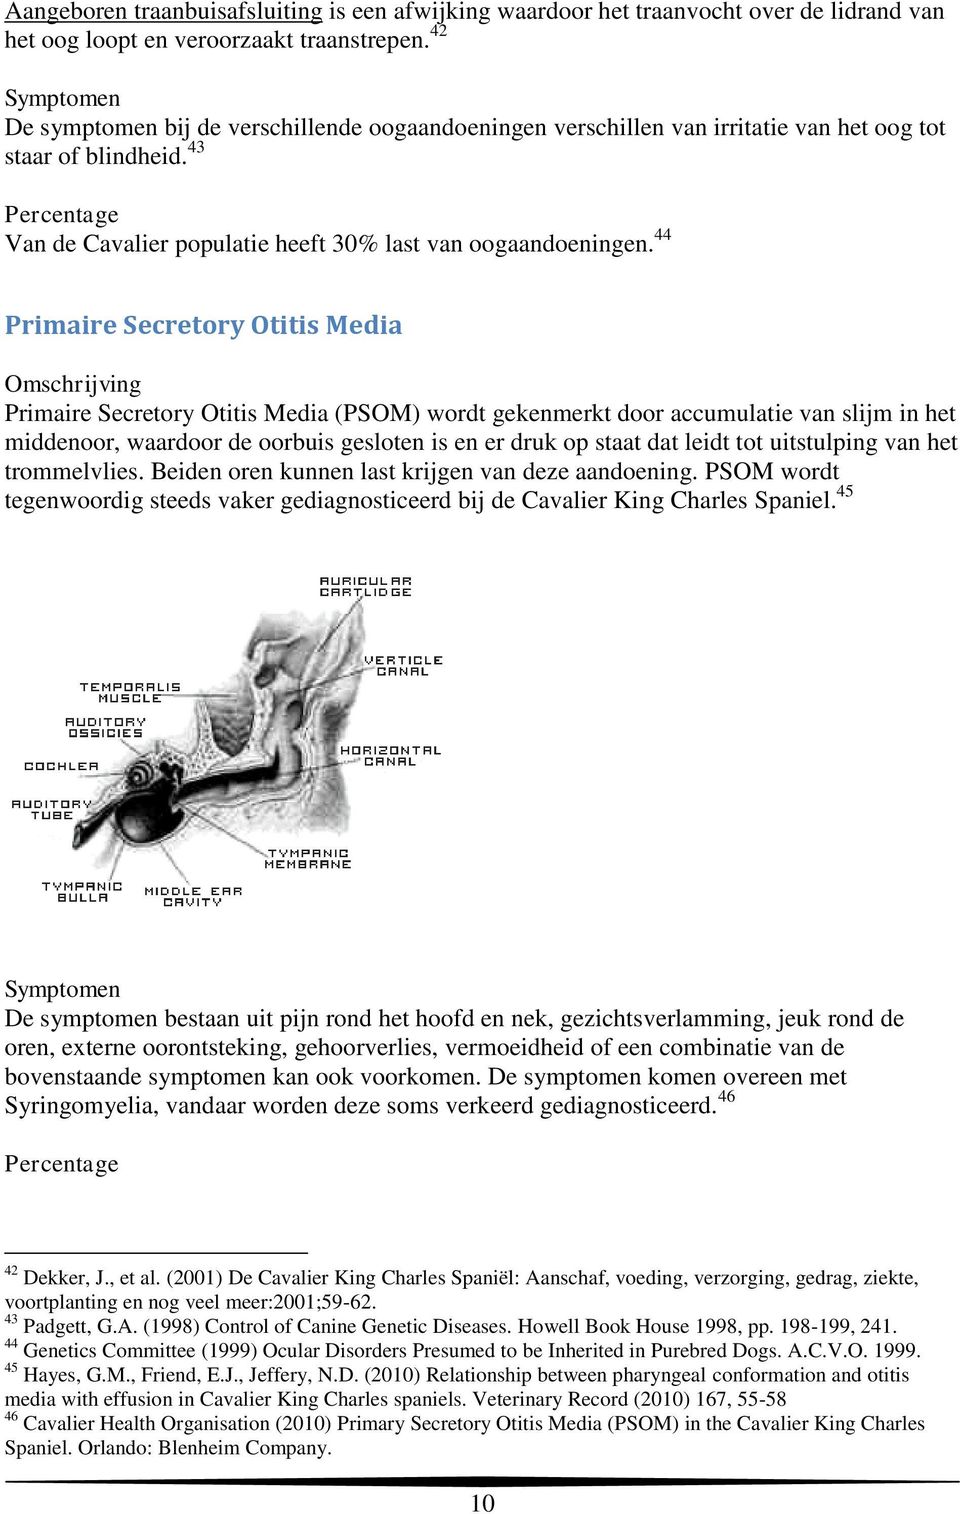 44 Primaire Secretory Otitis Media Omschrijving Primaire Secretory Otitis Media (PSOM) wordt gekenmerkt door accumulatie van slijm in het middenoor, waardoor de oorbuis gesloten is en er druk op